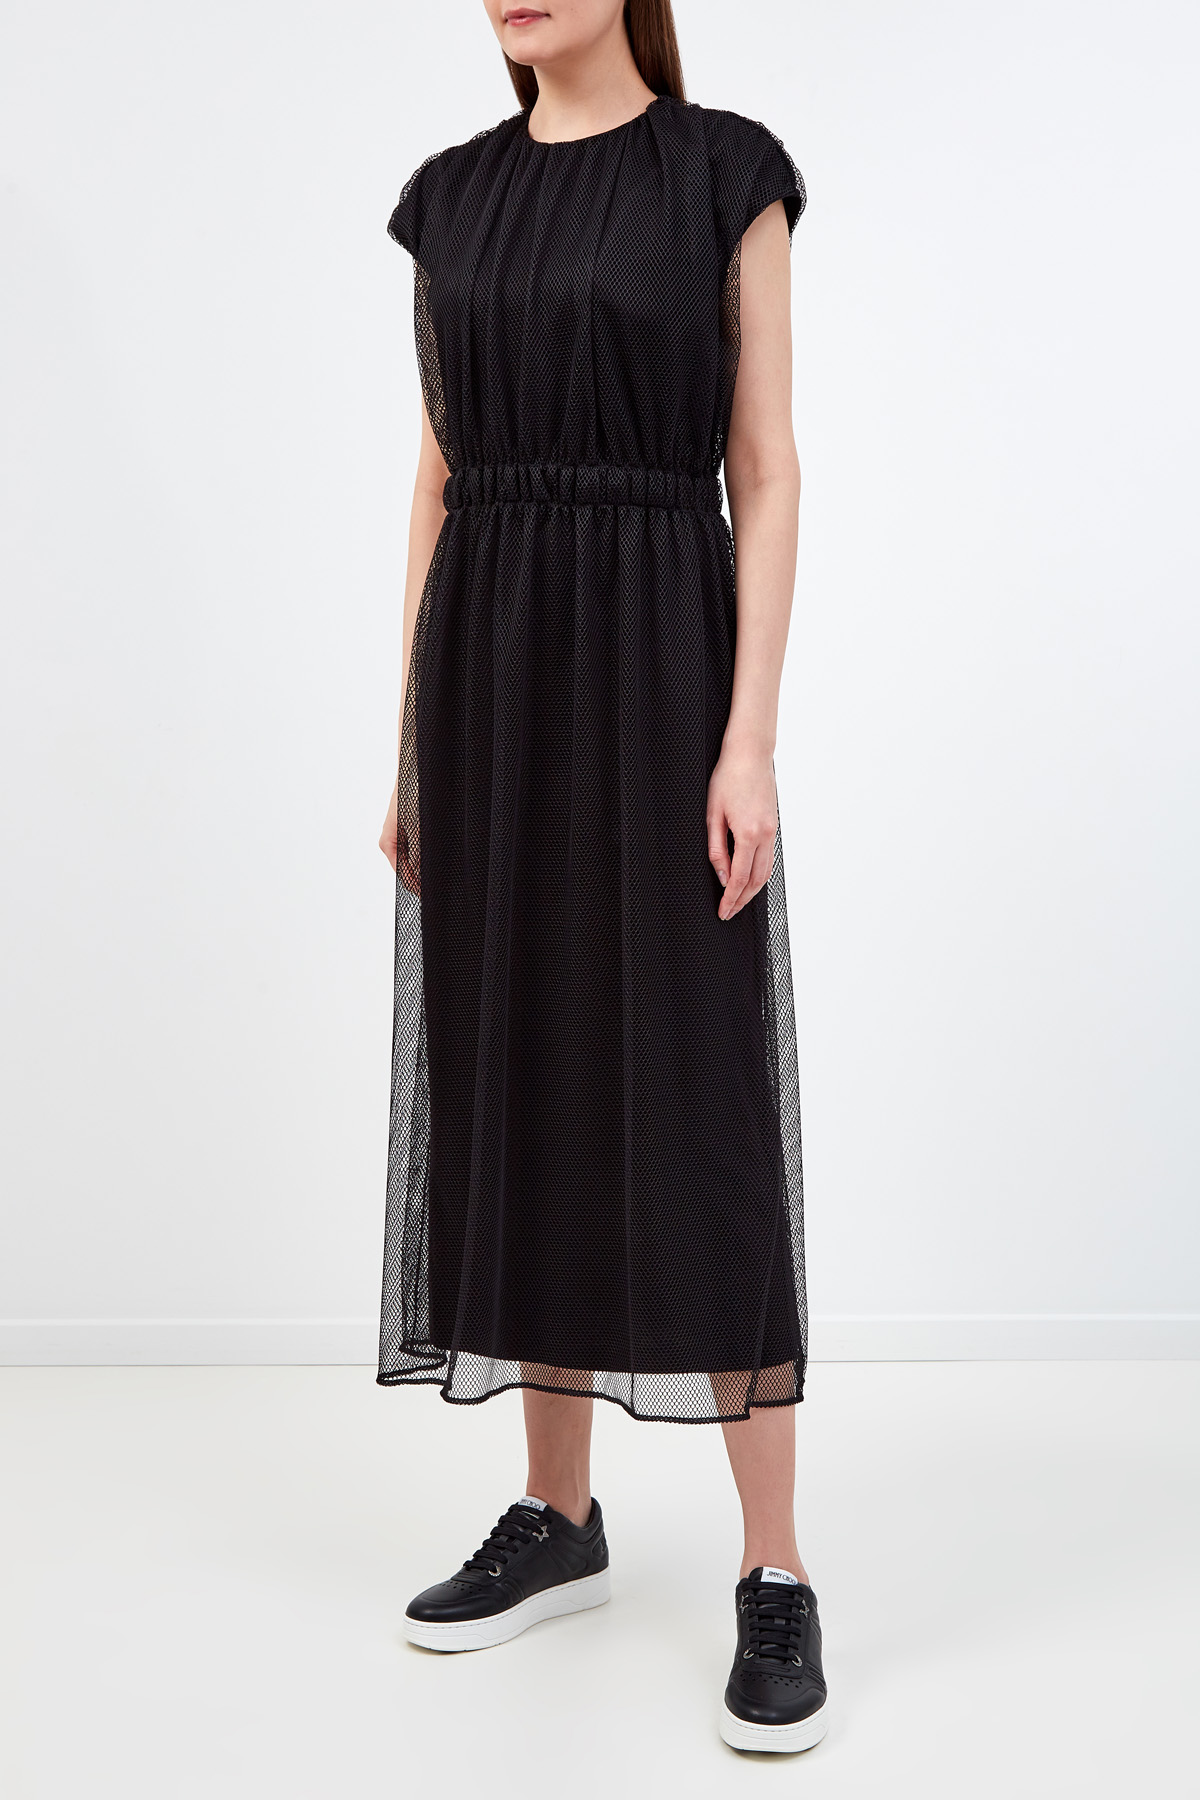 Двухслойное платье из хлопка и мембраны с разрезами по бокам MONCLER, цвет черный, размер 42 - фото 3